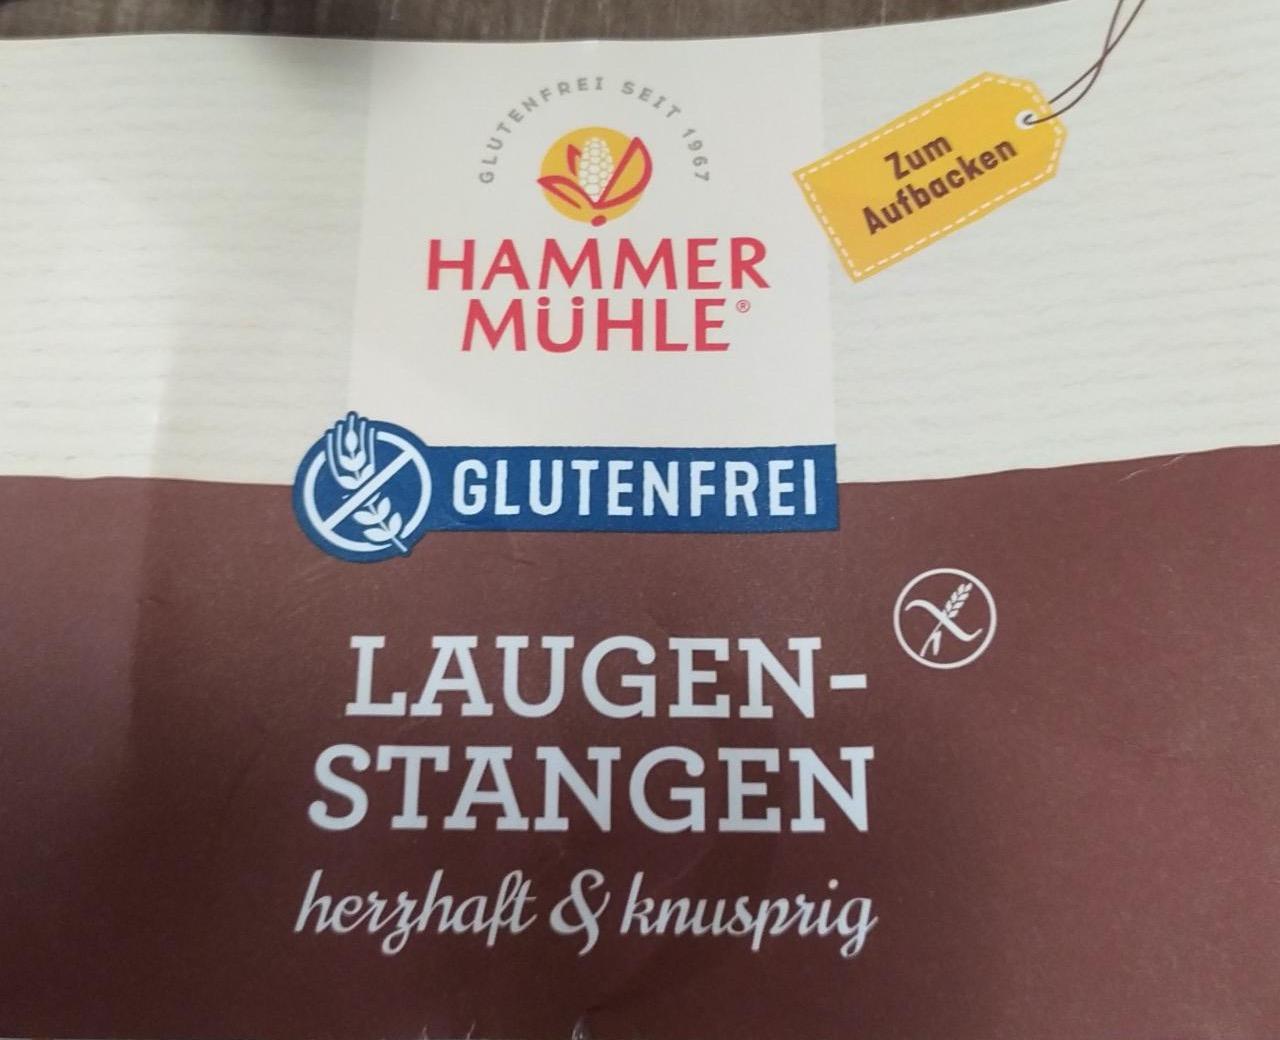 Fotografie - Laugen-Stangen herzhaft & knusprig Hammer Mühle